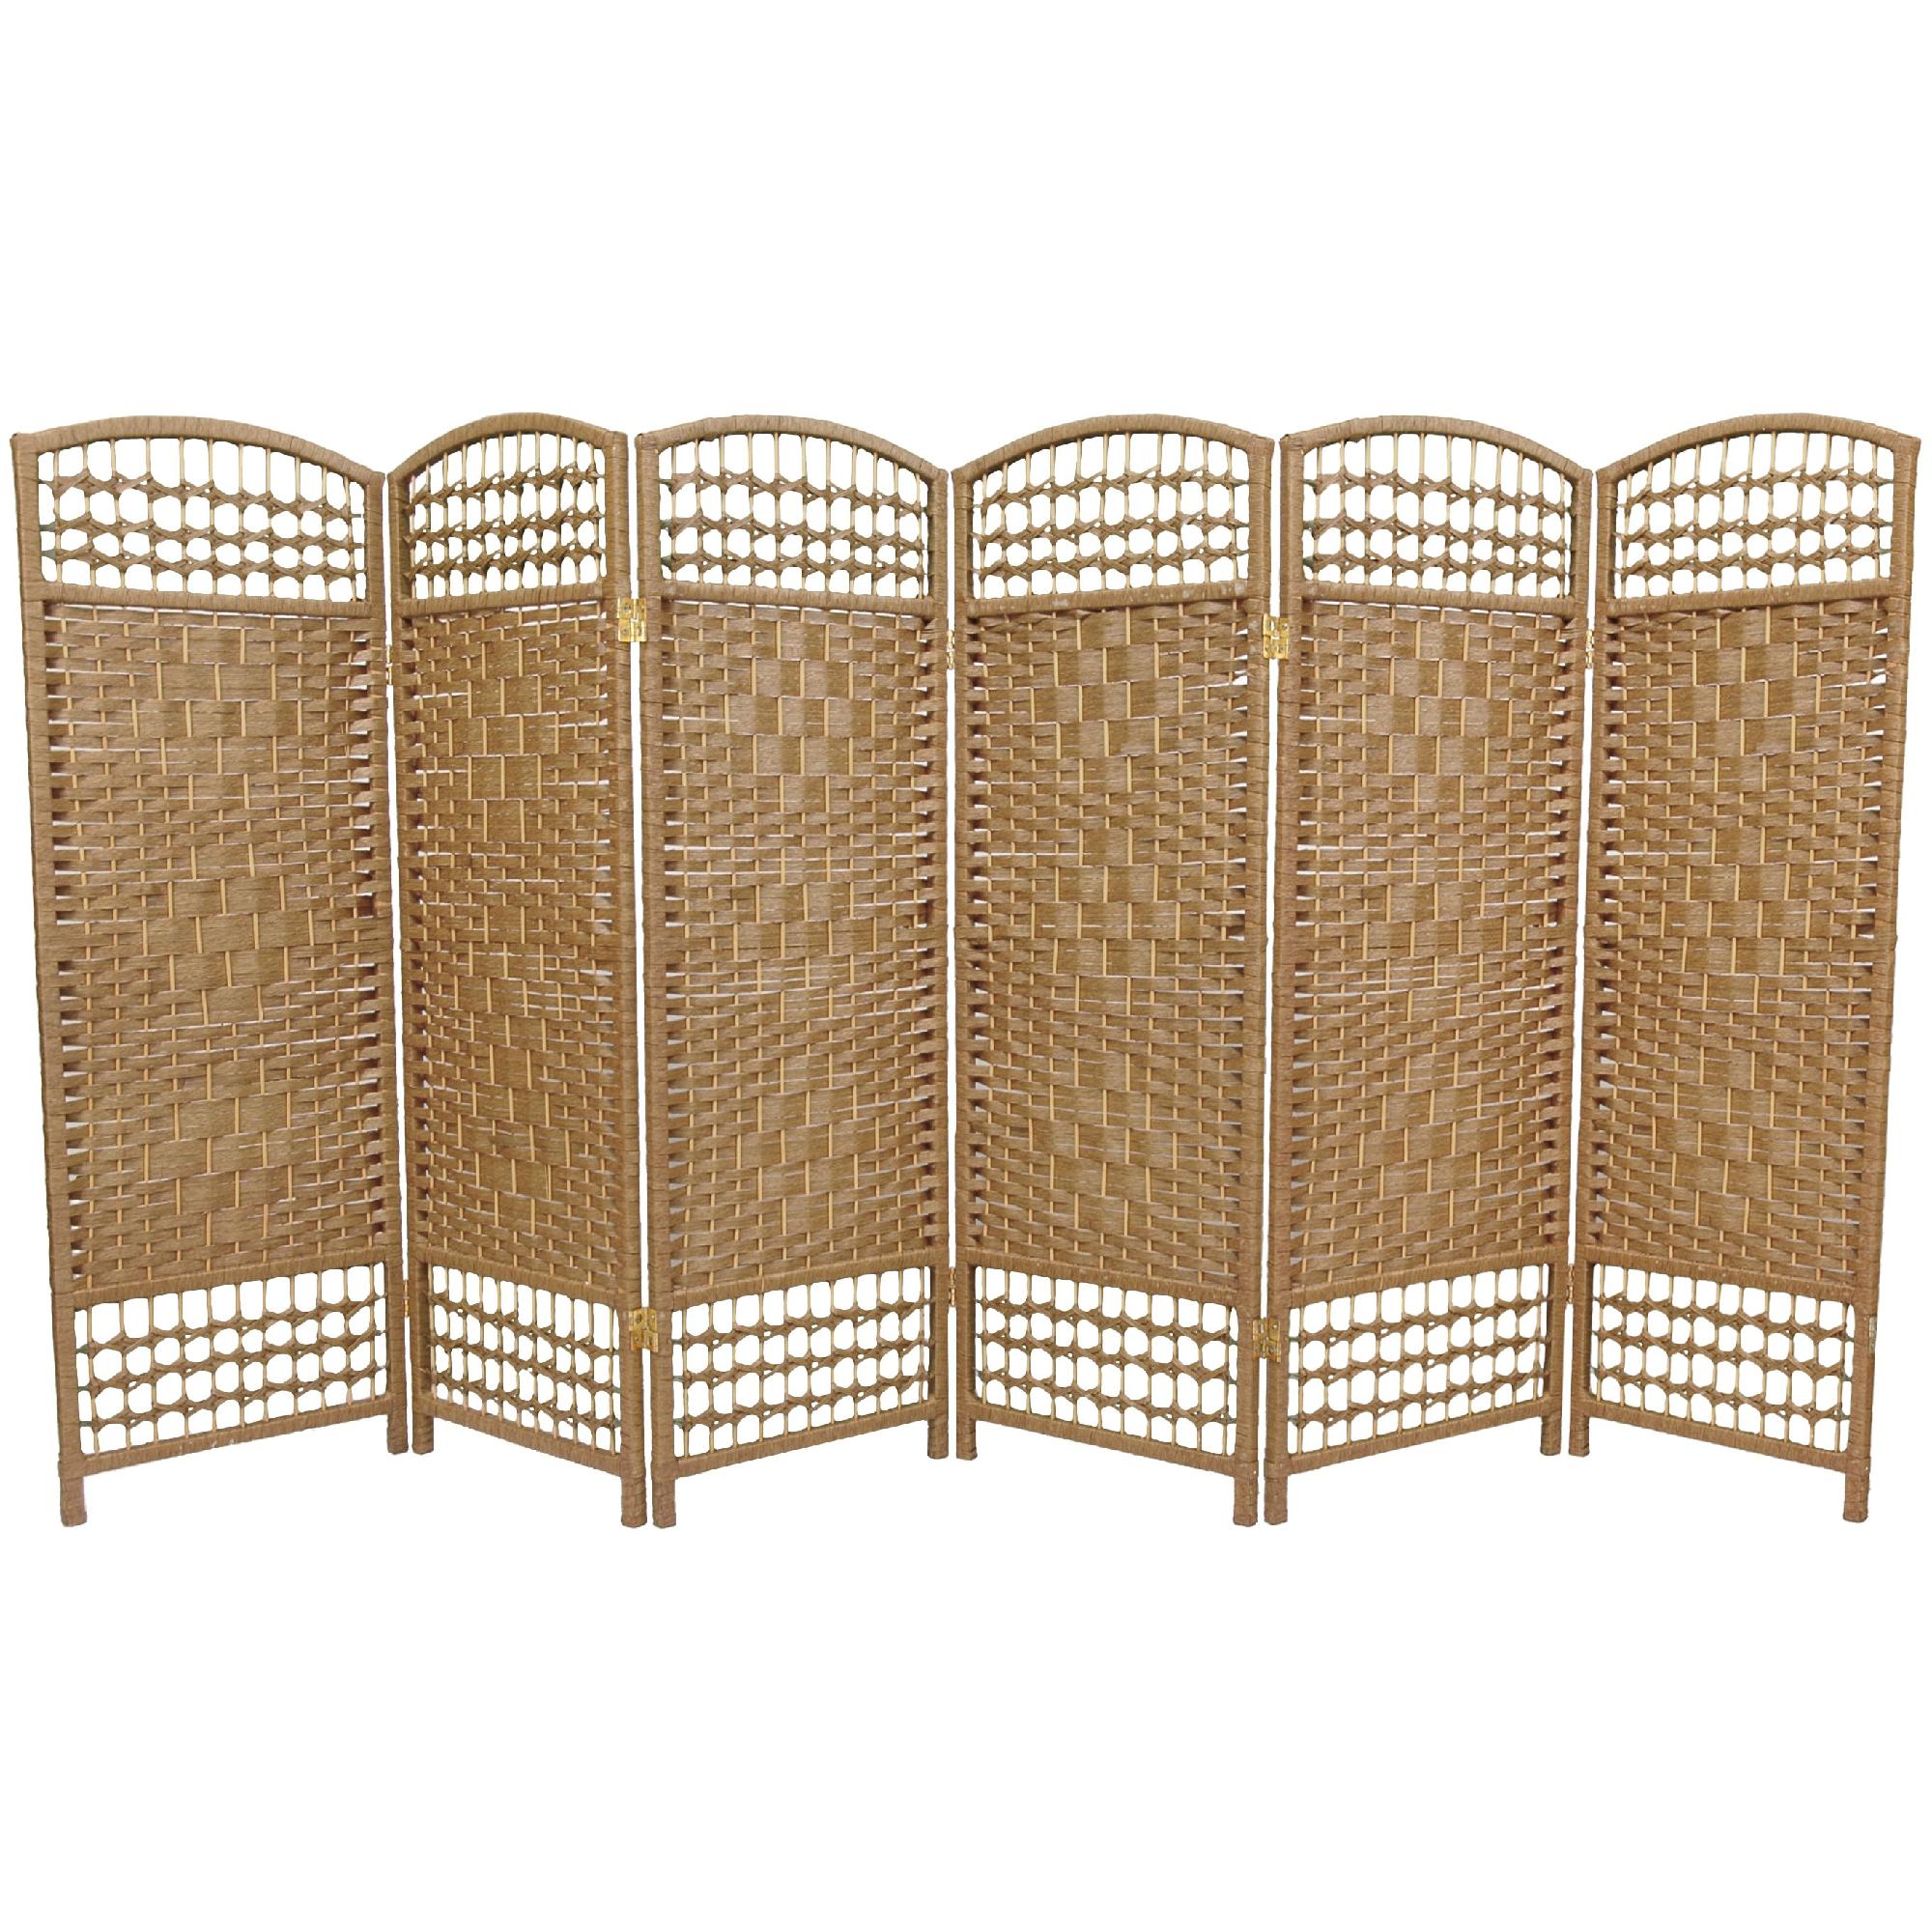 Oriental Furniture 4 ft. Tall Fiber Weave Room Divider - 6 Panel - Natural